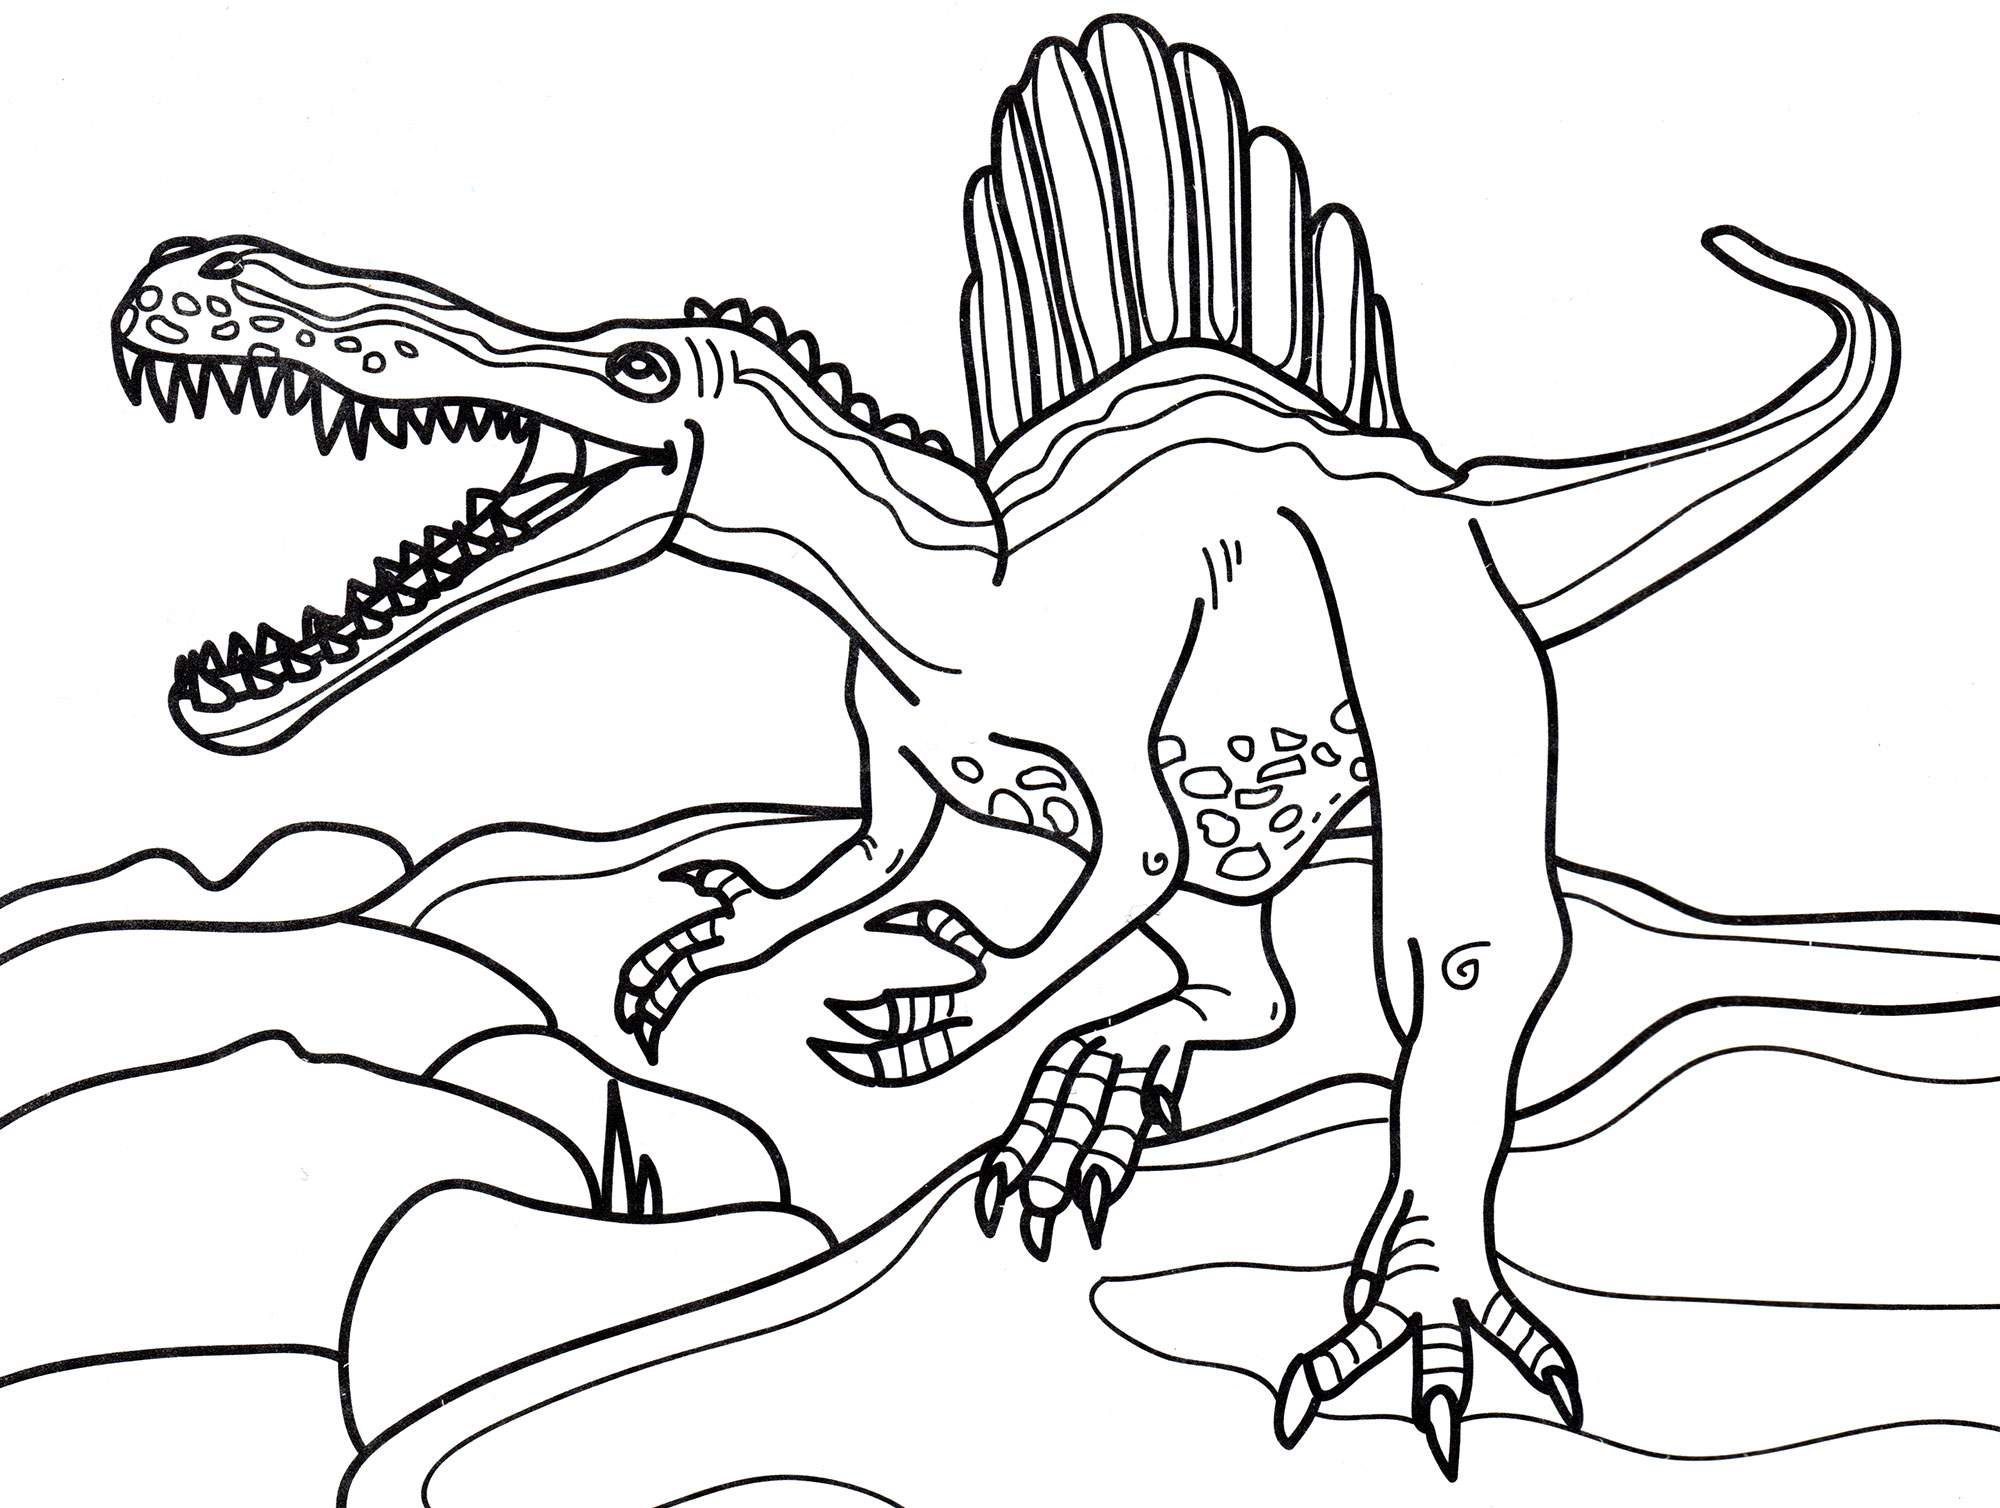 Динозавры раскраска а4. Раскраска динозавры Спинозавр. Свирепый Спинозавр. Спинозавр рисунок раскраска.